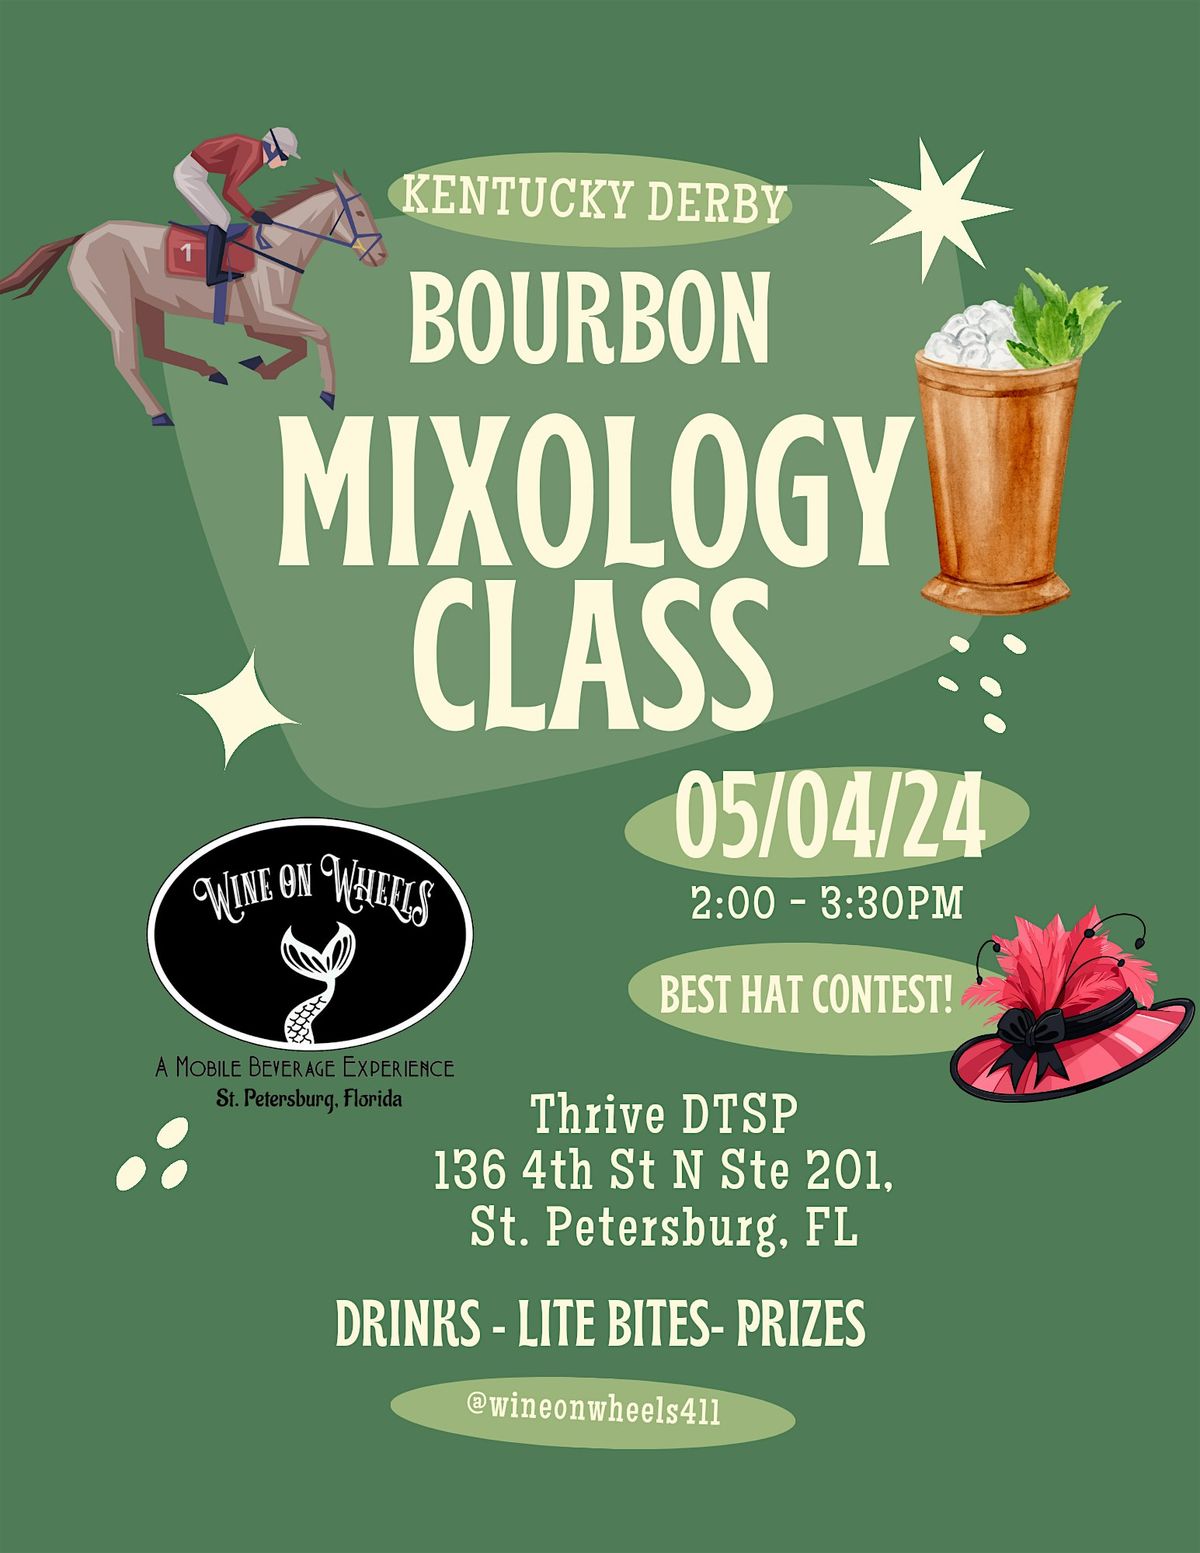 MIXOLOGY CLASS - Bourbon - Kentucky Derby Party